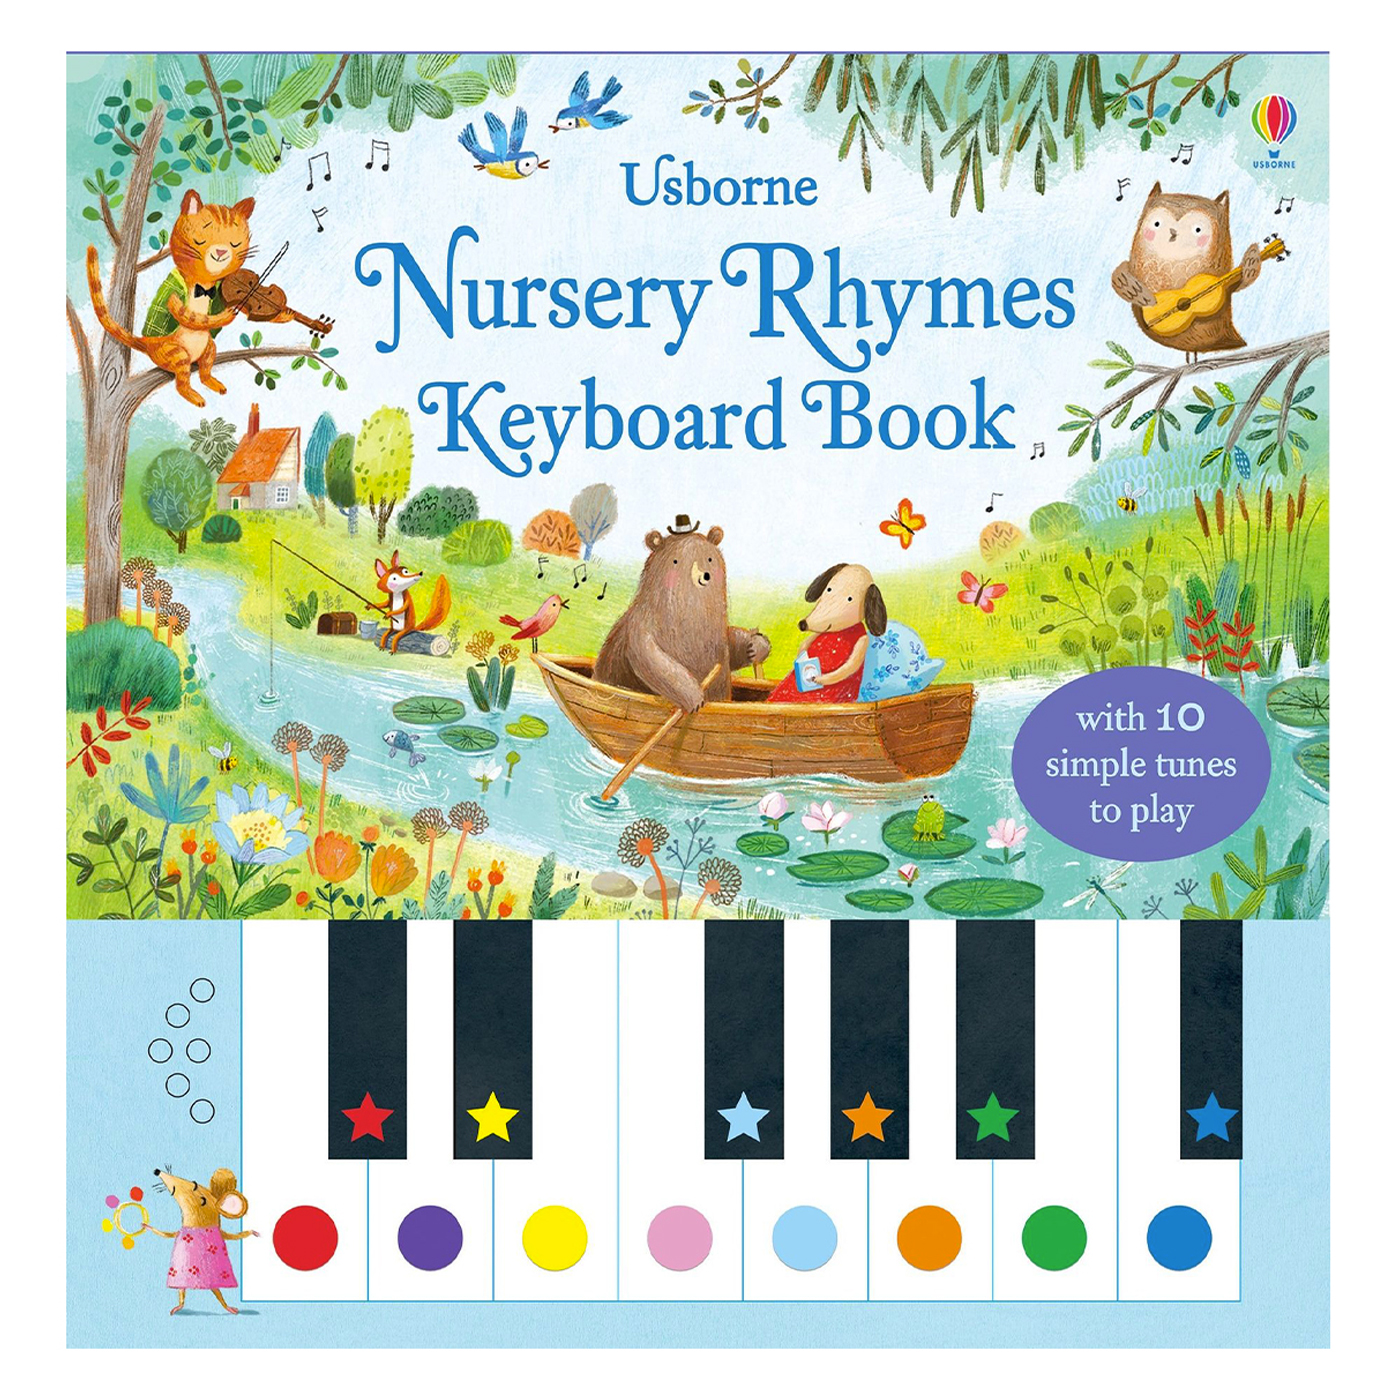  Nursery Rhymes Keyboard Book